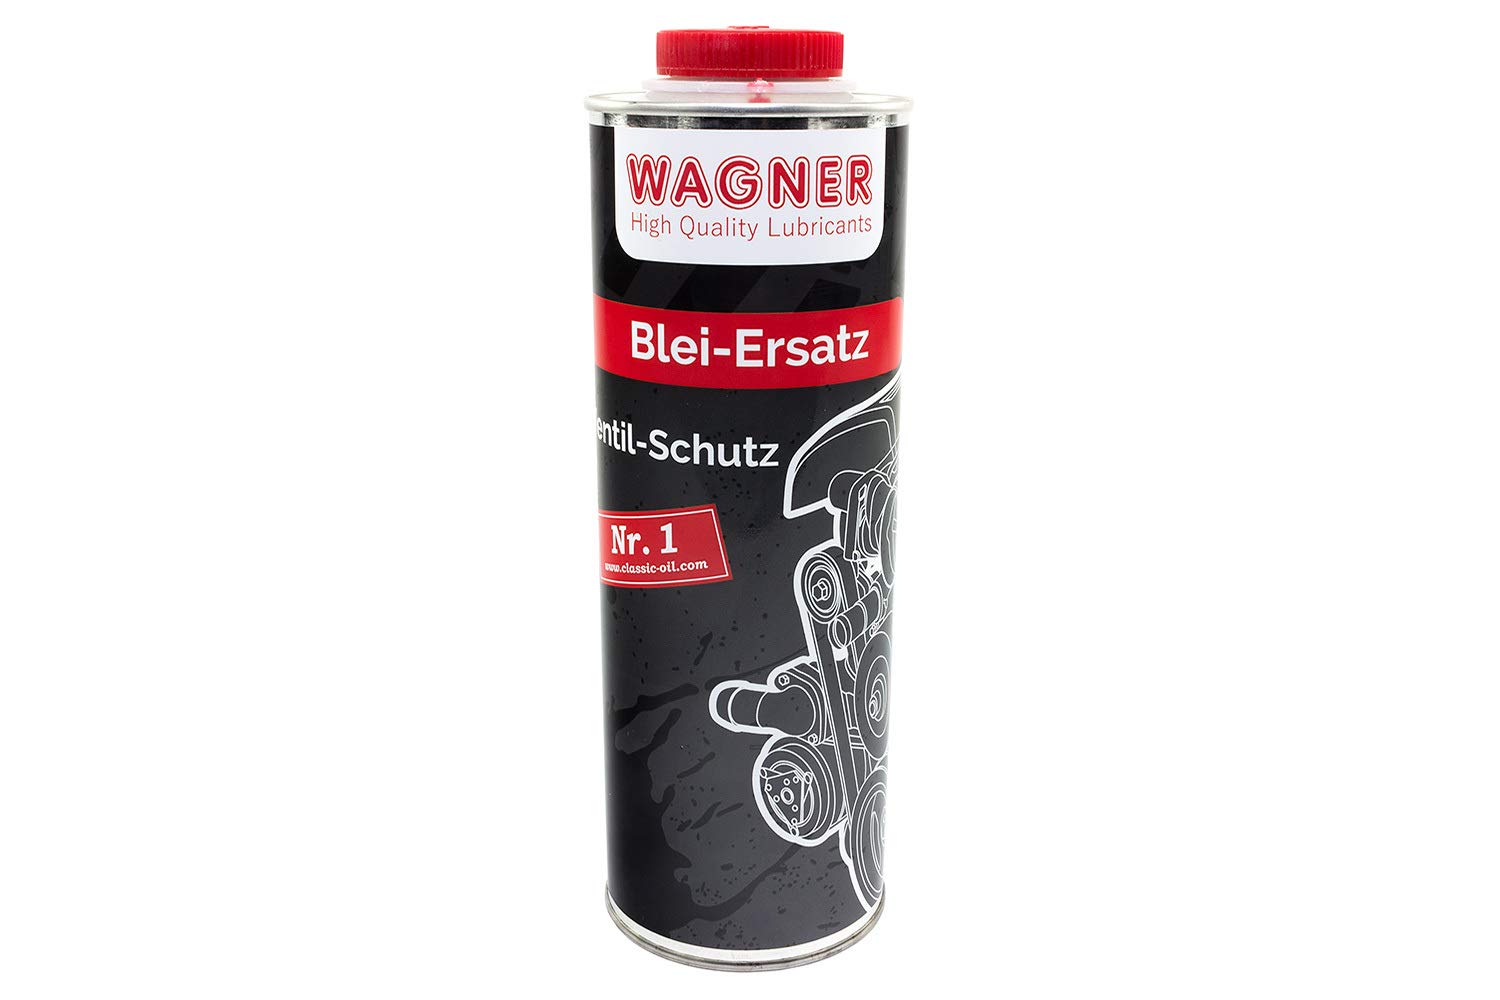 WAGNER Bleiersatz Ventilschutzmittel - 042001 - 1 Liter von WAGNER Spezialschmierstoffe GmbH & Co. KG